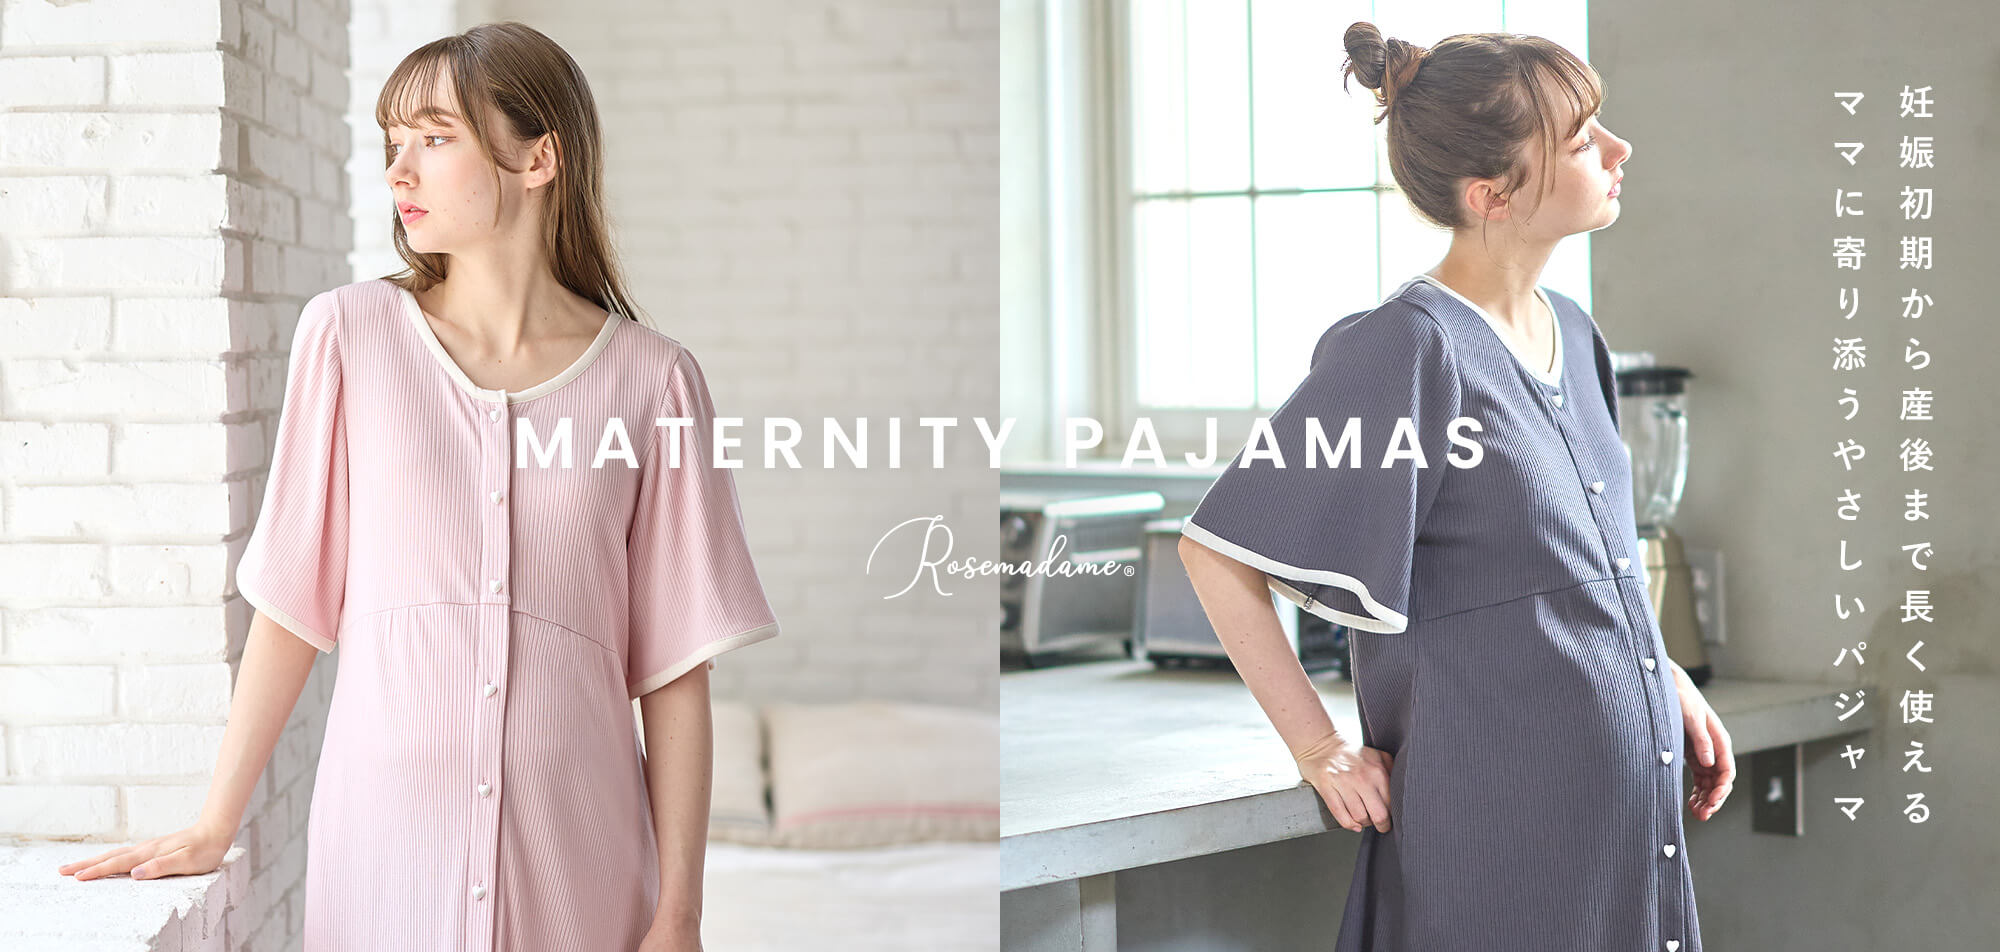 Maternity pajamas